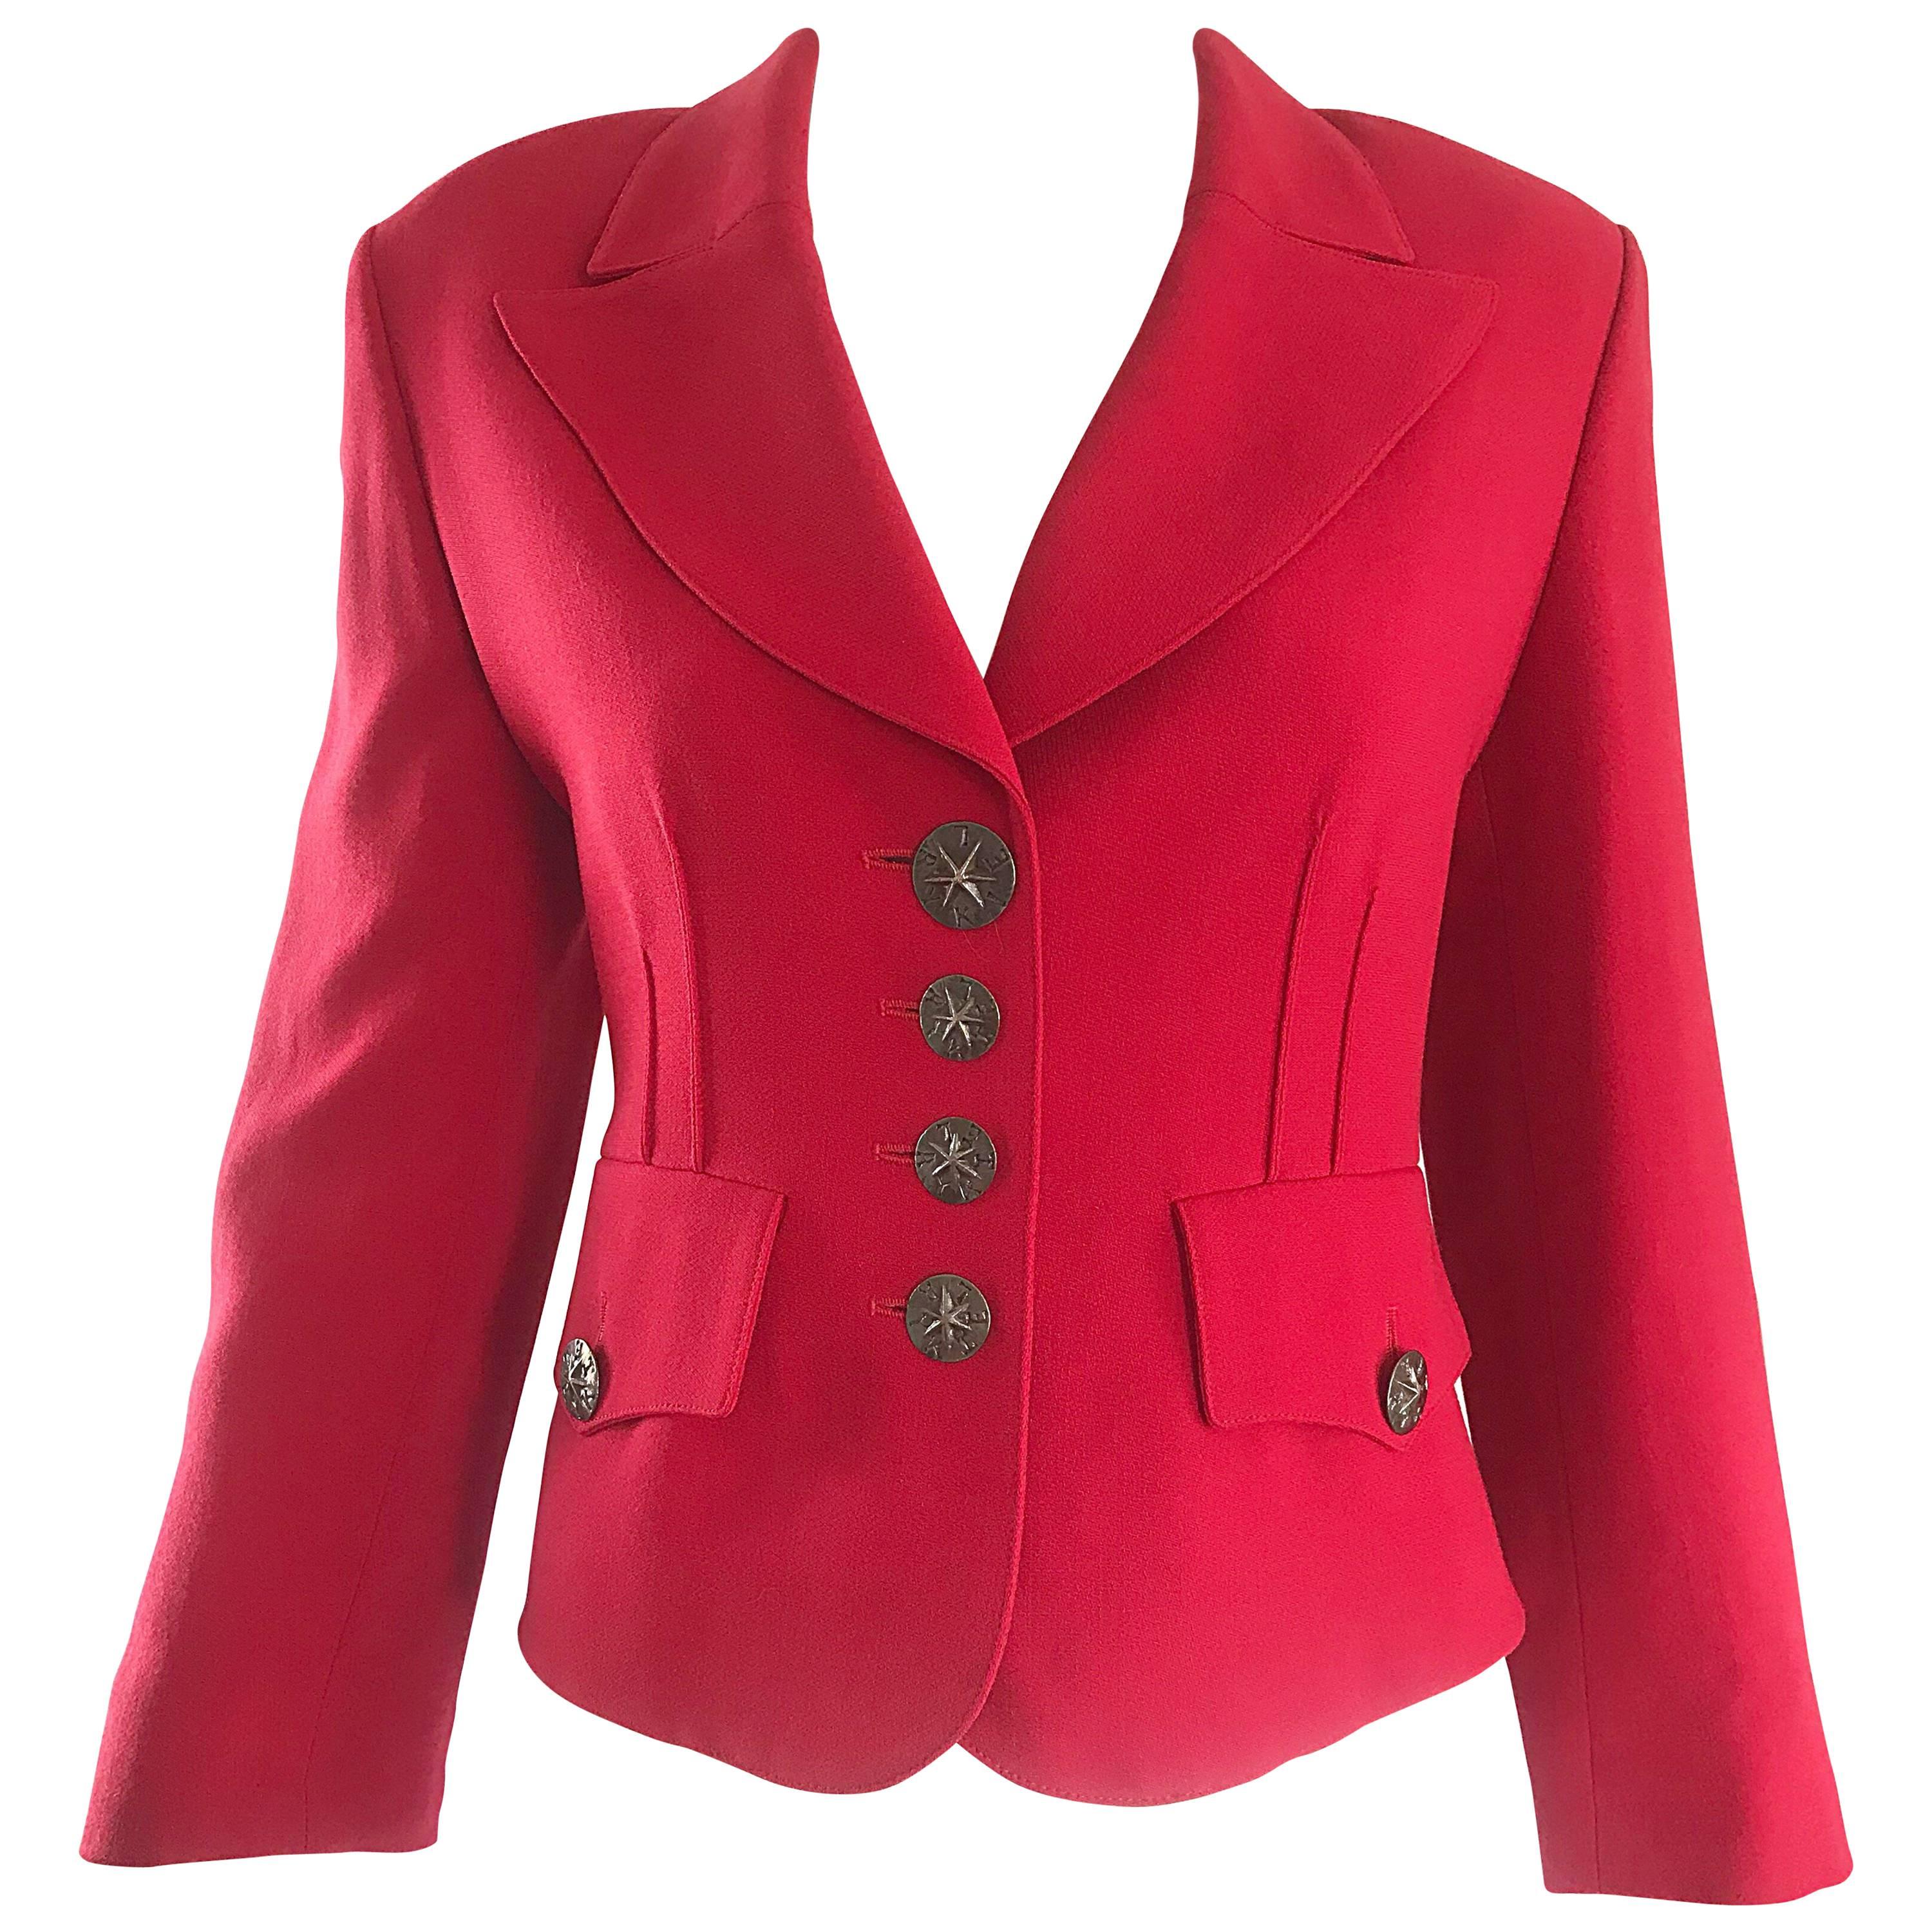 Vintage Sonia Rykiel 1990s Does 40s Sz 40 Lipstick Red Cropped 90s Blazer Jacket